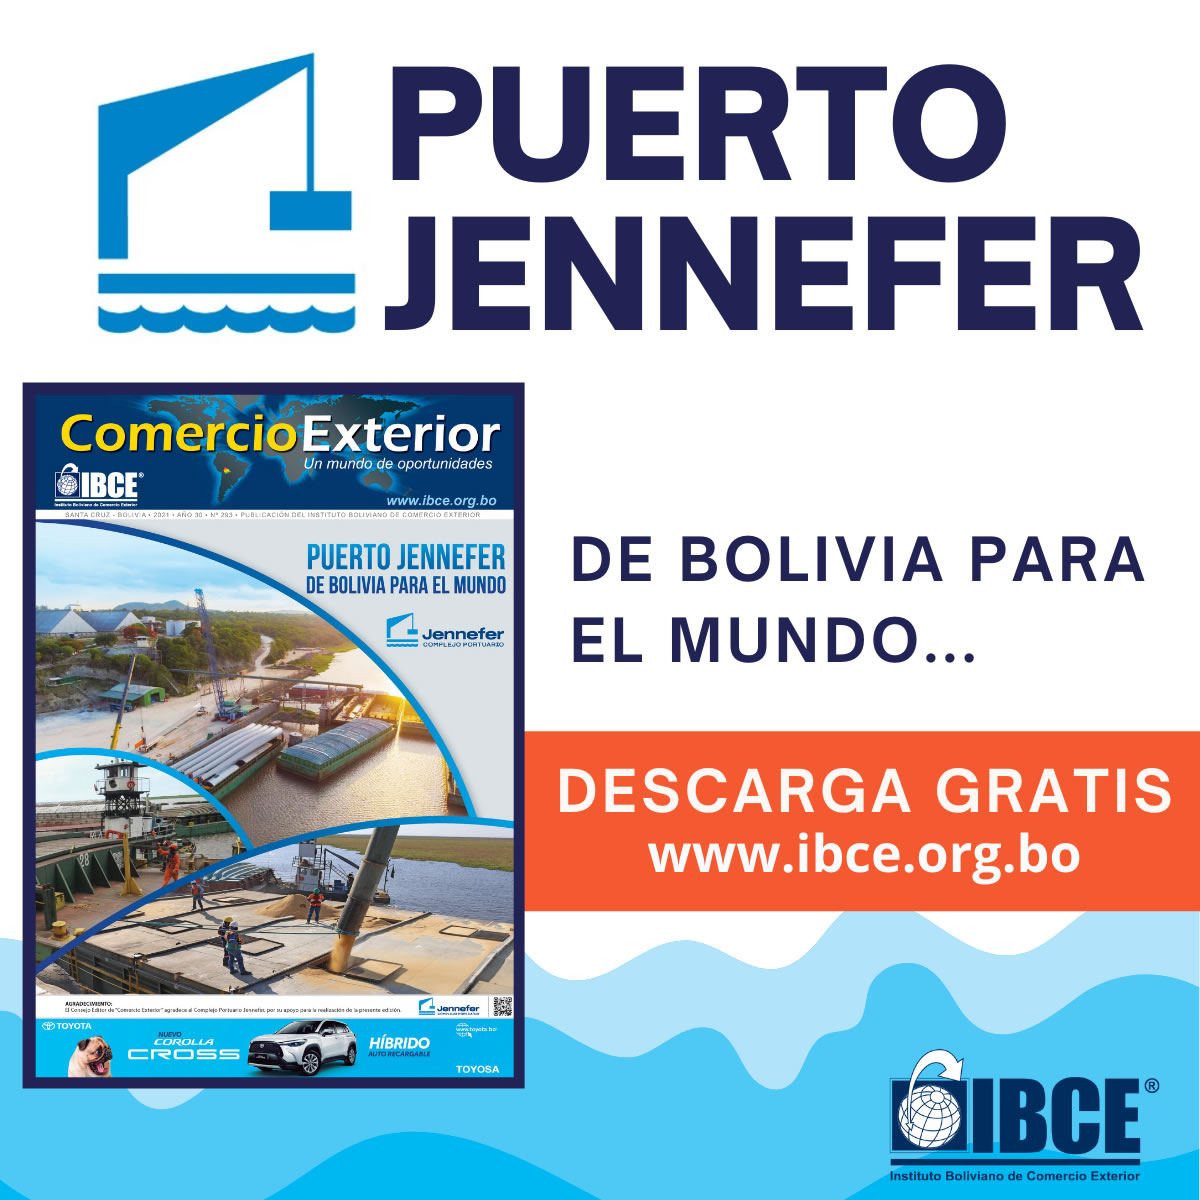 Puerto Jennefer de Bolivia para el mundo